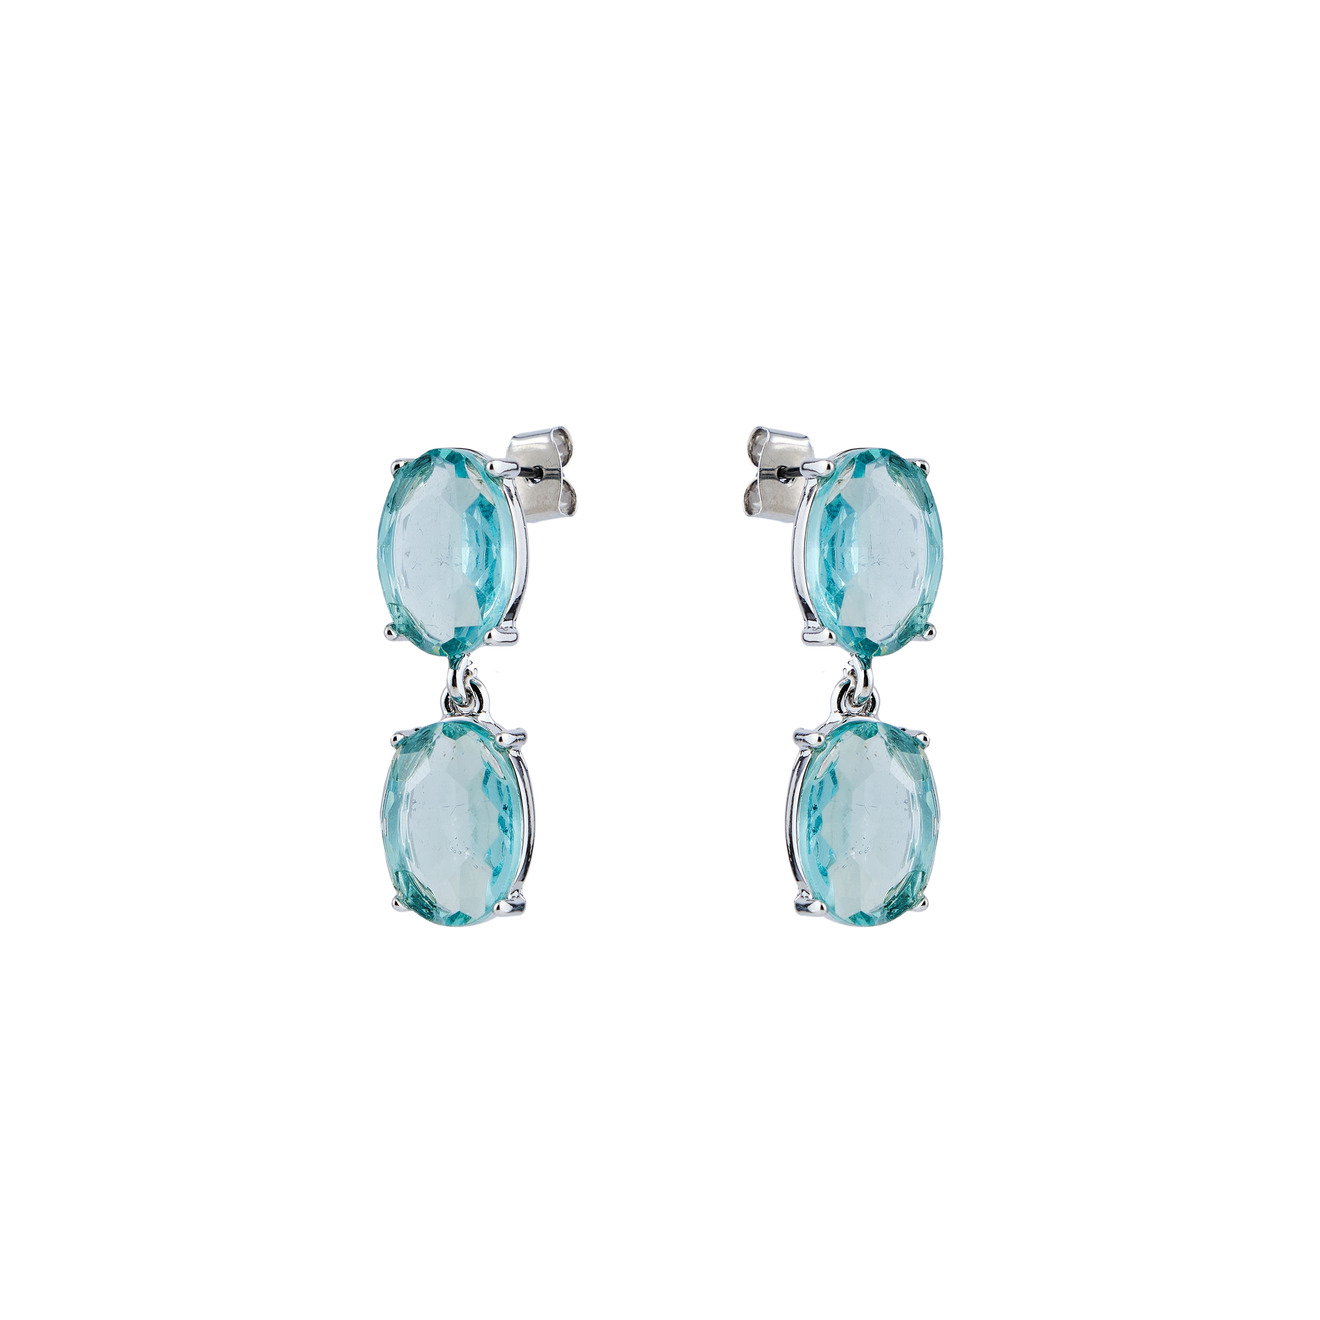 Free Form Jewelry Серебристые серьги с двумя светло-голубыми кристаллами цена и фото